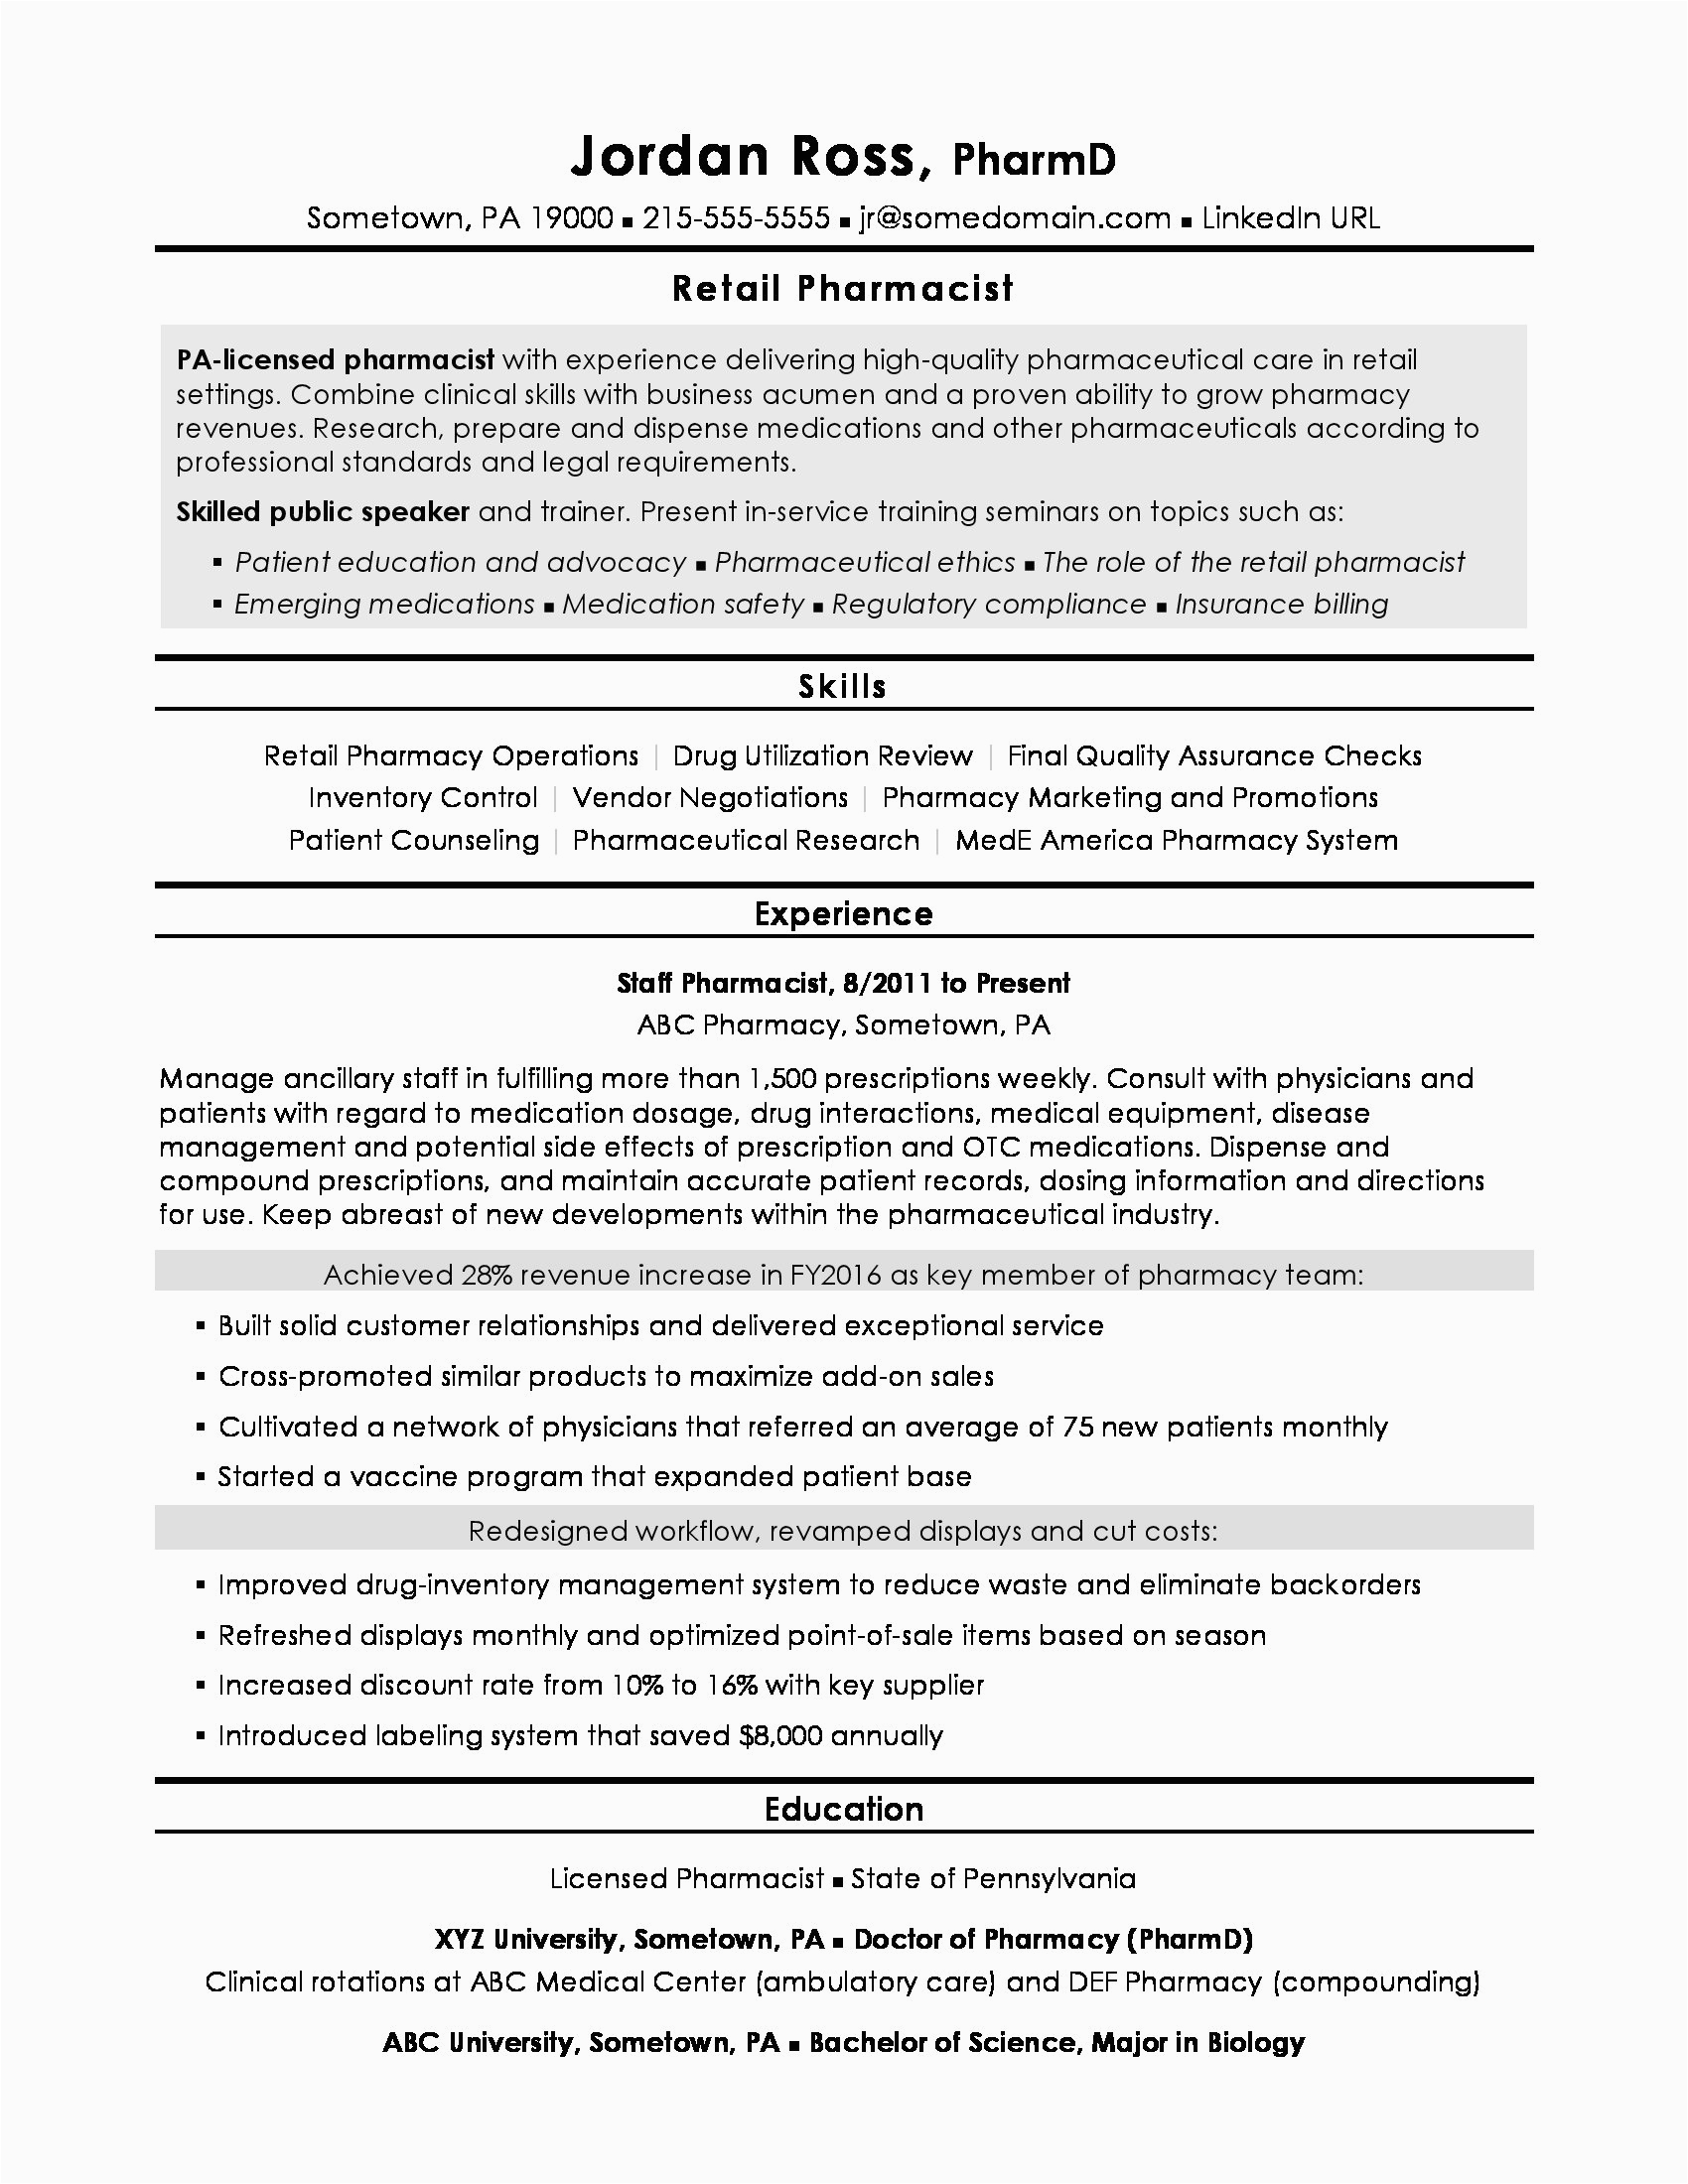 Sample Resume for Pharmacist In the Philippines Resume Sample format 2020 Philippines